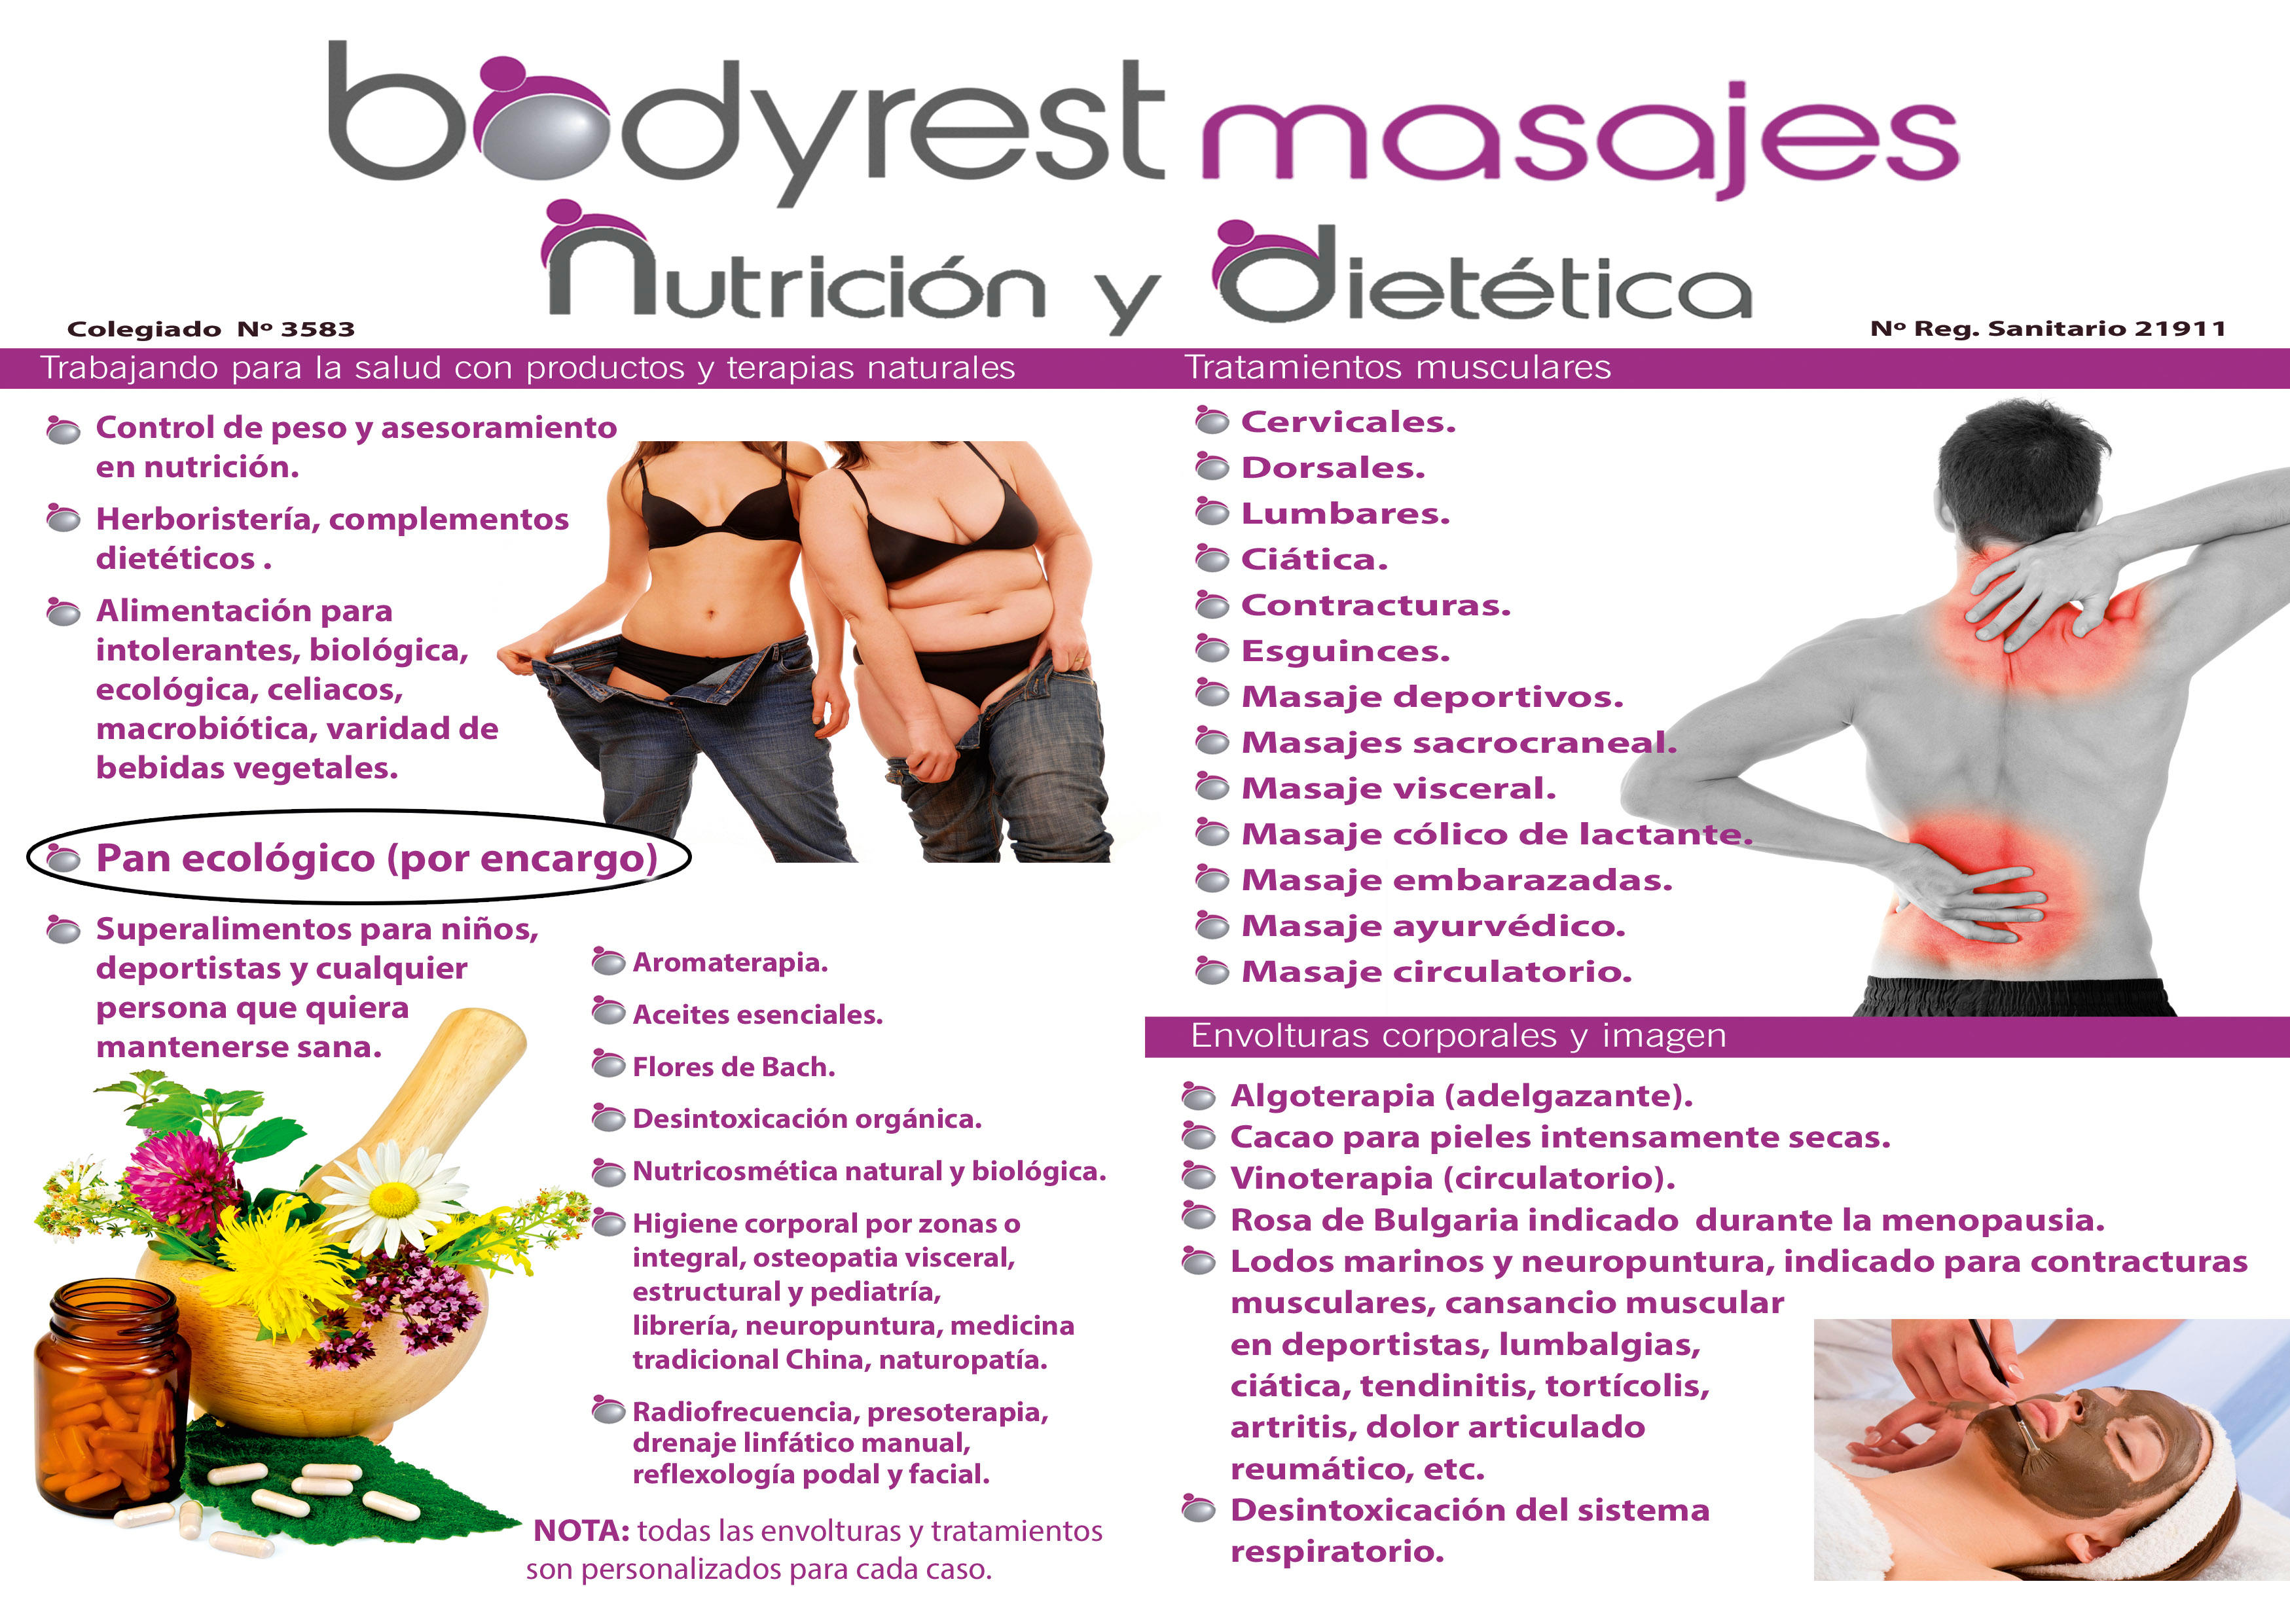 Images Bodyrest Masajes Nutrición Y Dietética